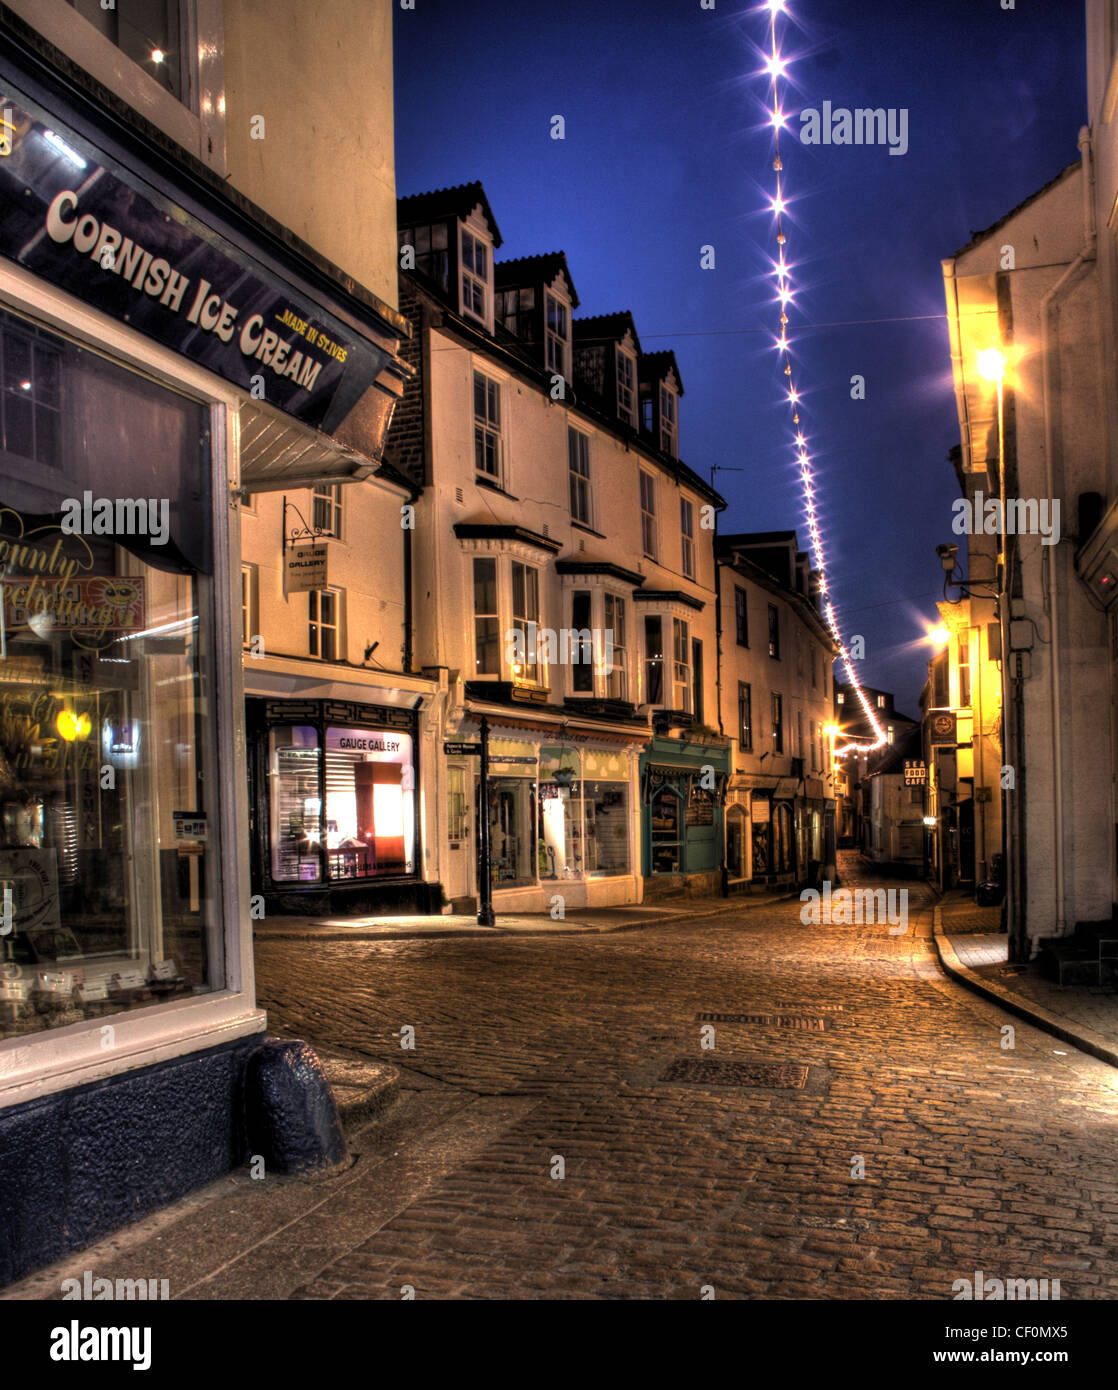 Crépuscule dans la ville de St Ives, Fore Street, Cornish Ice Cream Shop, Cornwall, Angleterre du Sud-Ouest, Royaume-Uni Banque D'Images